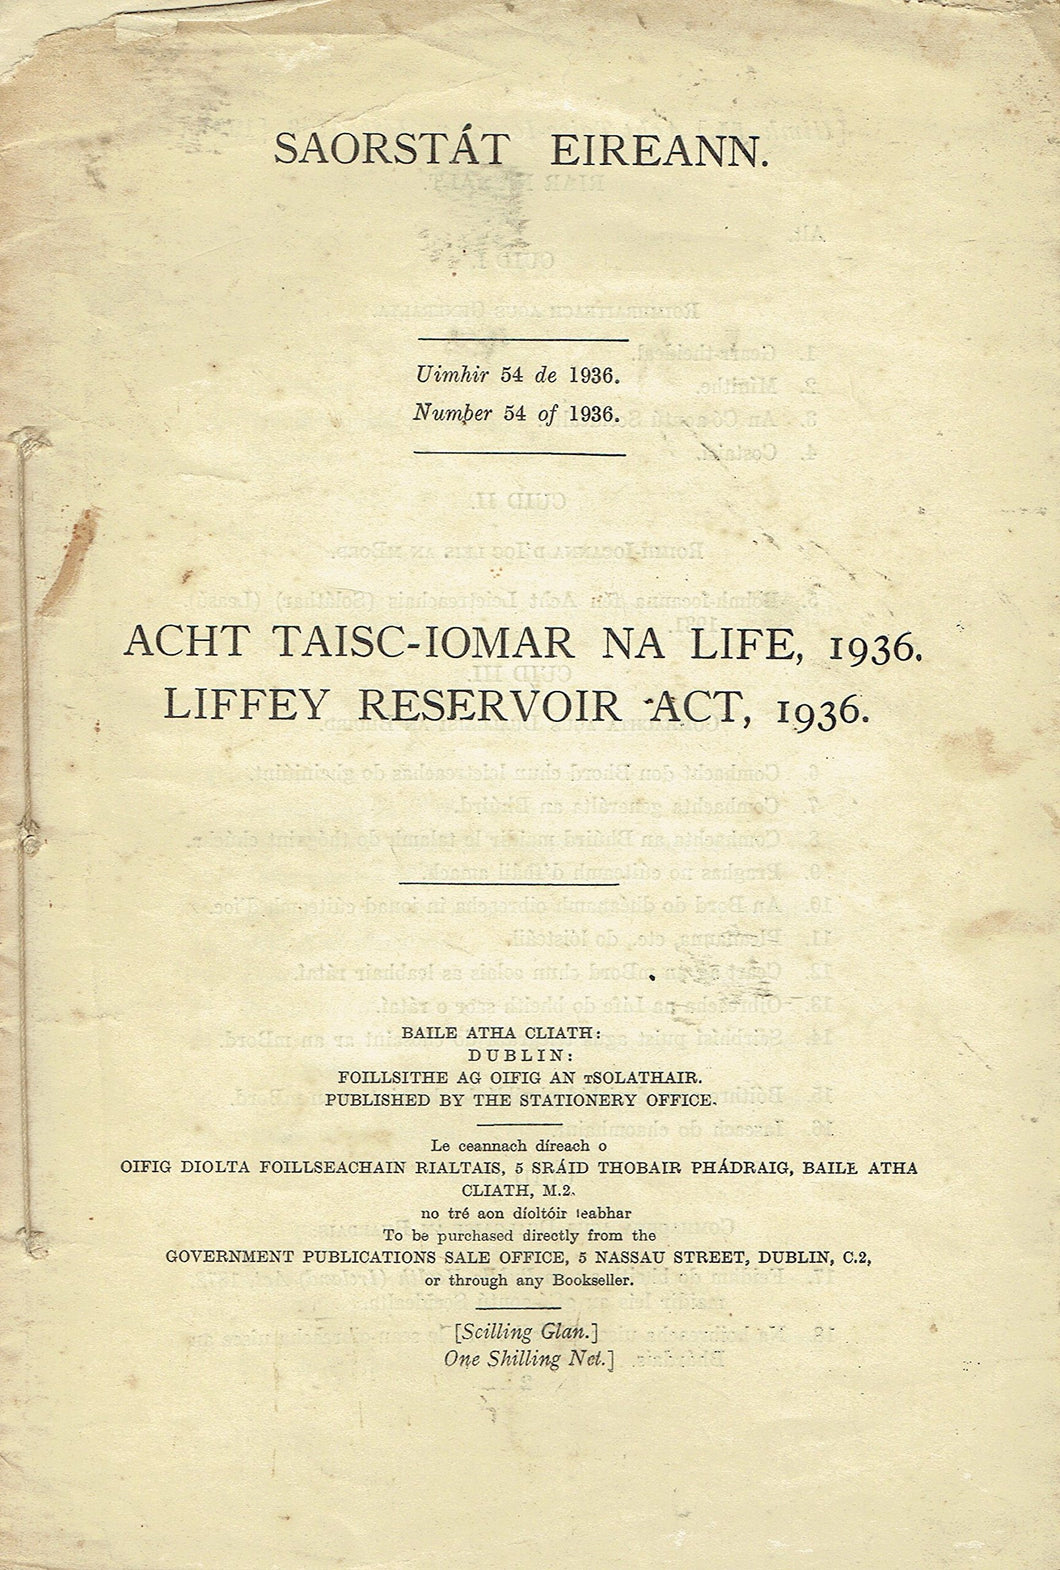 Liffey Reservoir Act, 1936/Acht Taisc-Iomar na Life, 1936 - Saorstát Éireann